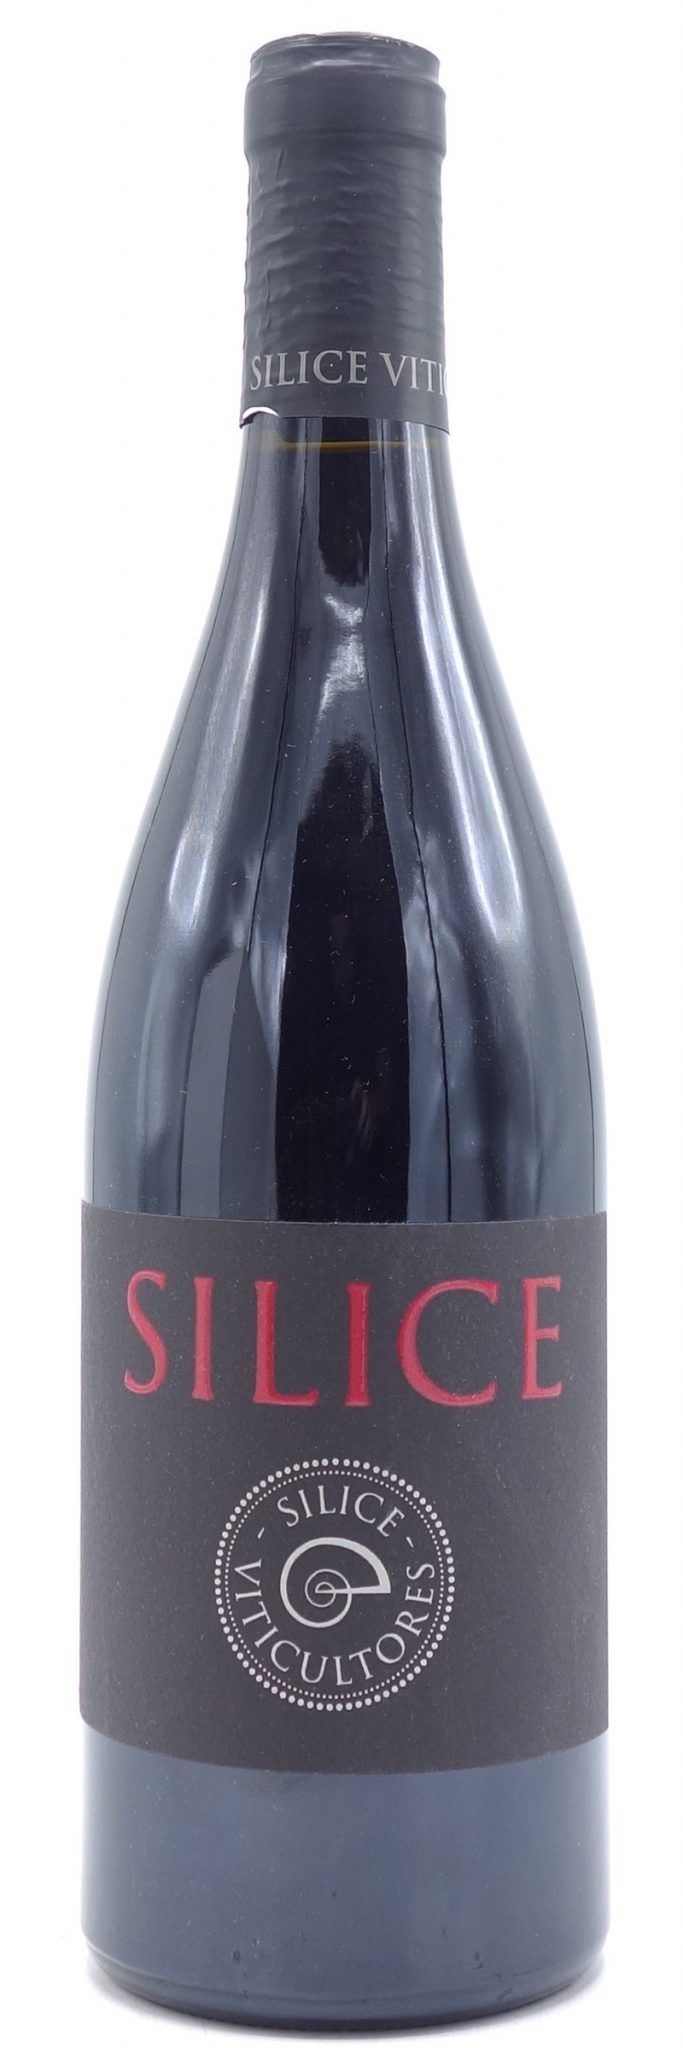 bottle of 2019 Silice Viticultores Ribeira Sacra 750ml